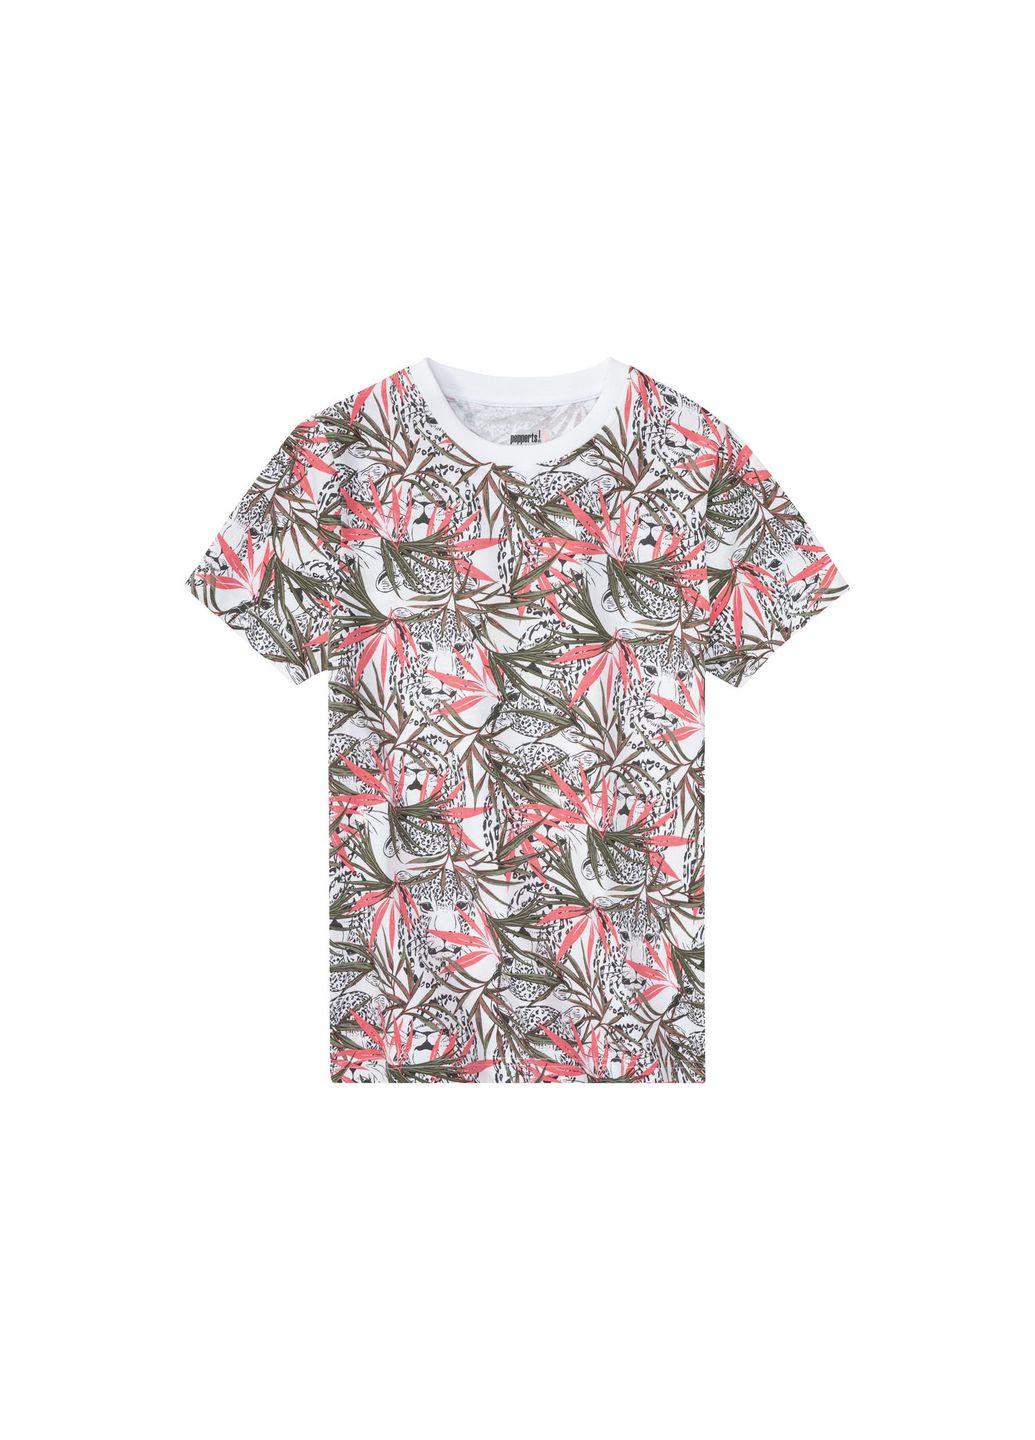 Комбинированная летняя набор футболок для мальчика Pepperts